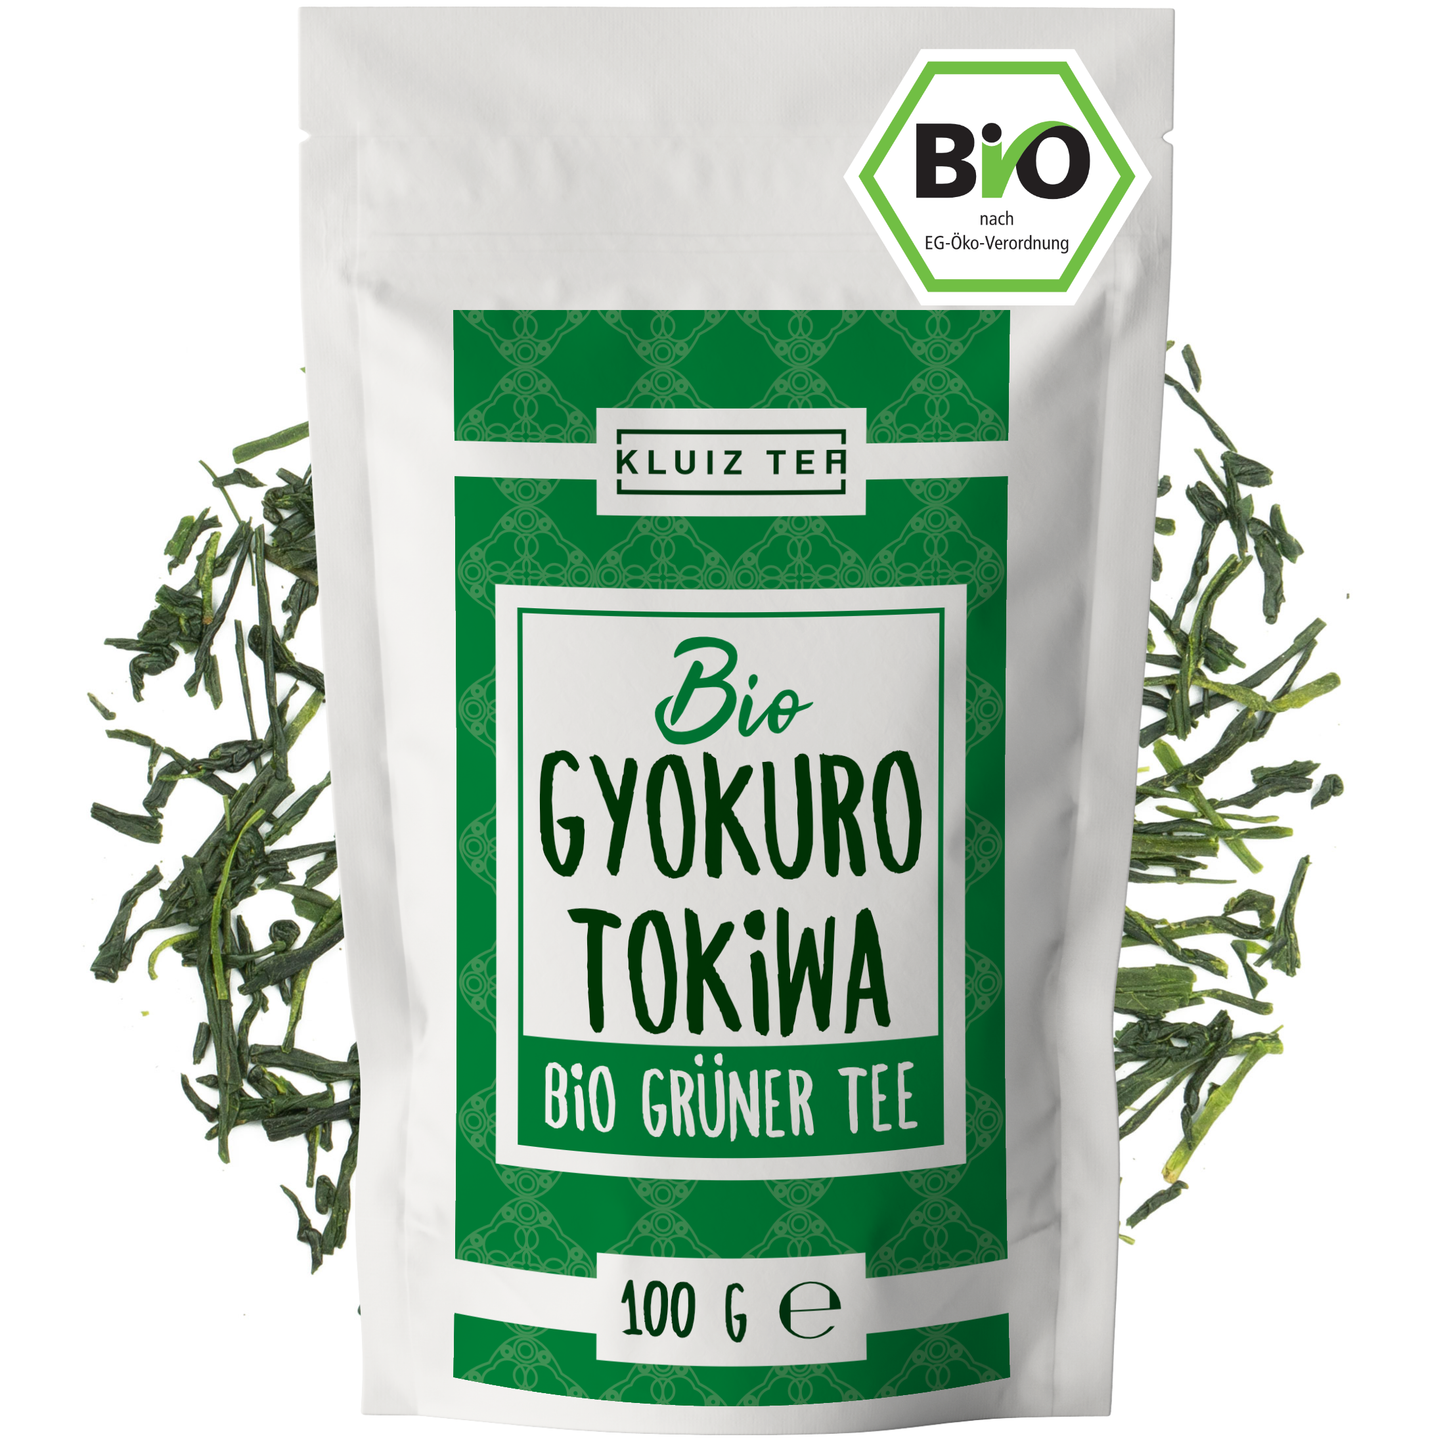 Grüner Tee - Bio Gyokuro Tokiwa